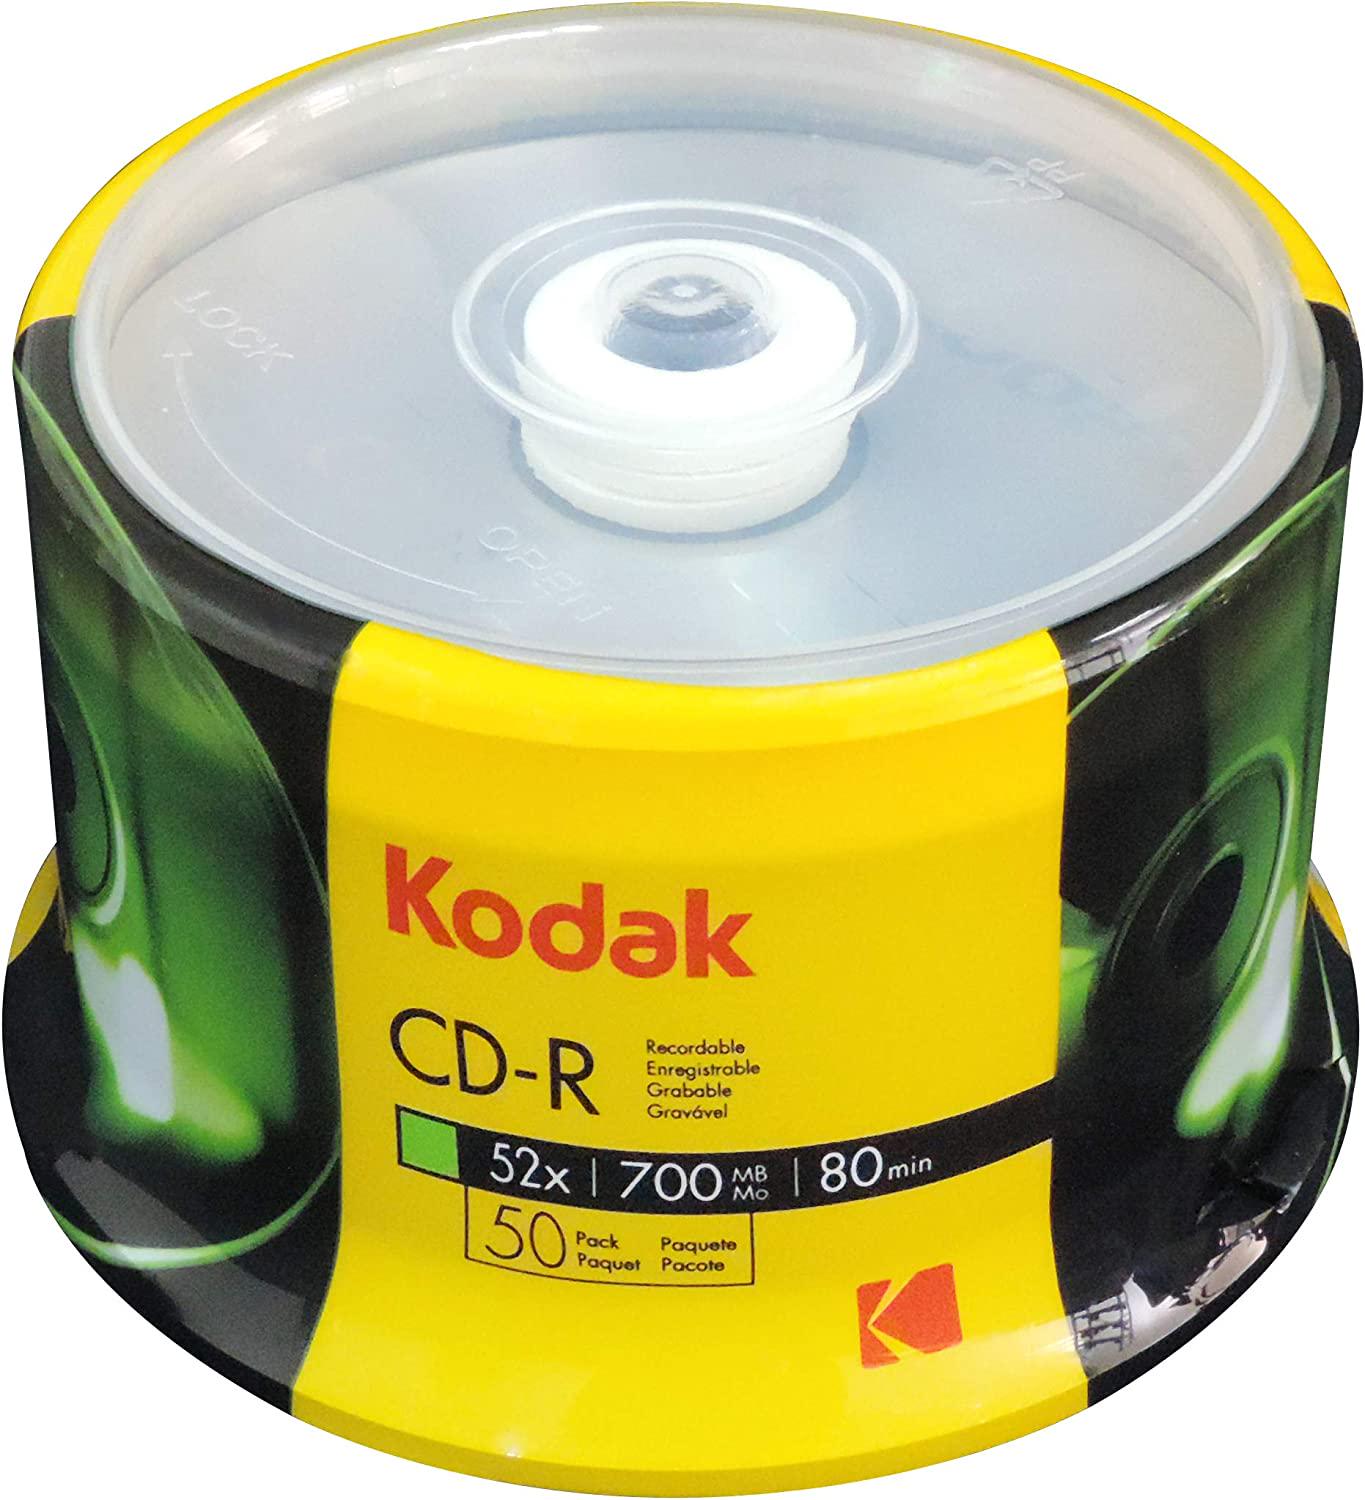 Kodak, Kodak CD-R Kodak CD-R 700MB 52x Spindle 50 Pack, (510050)